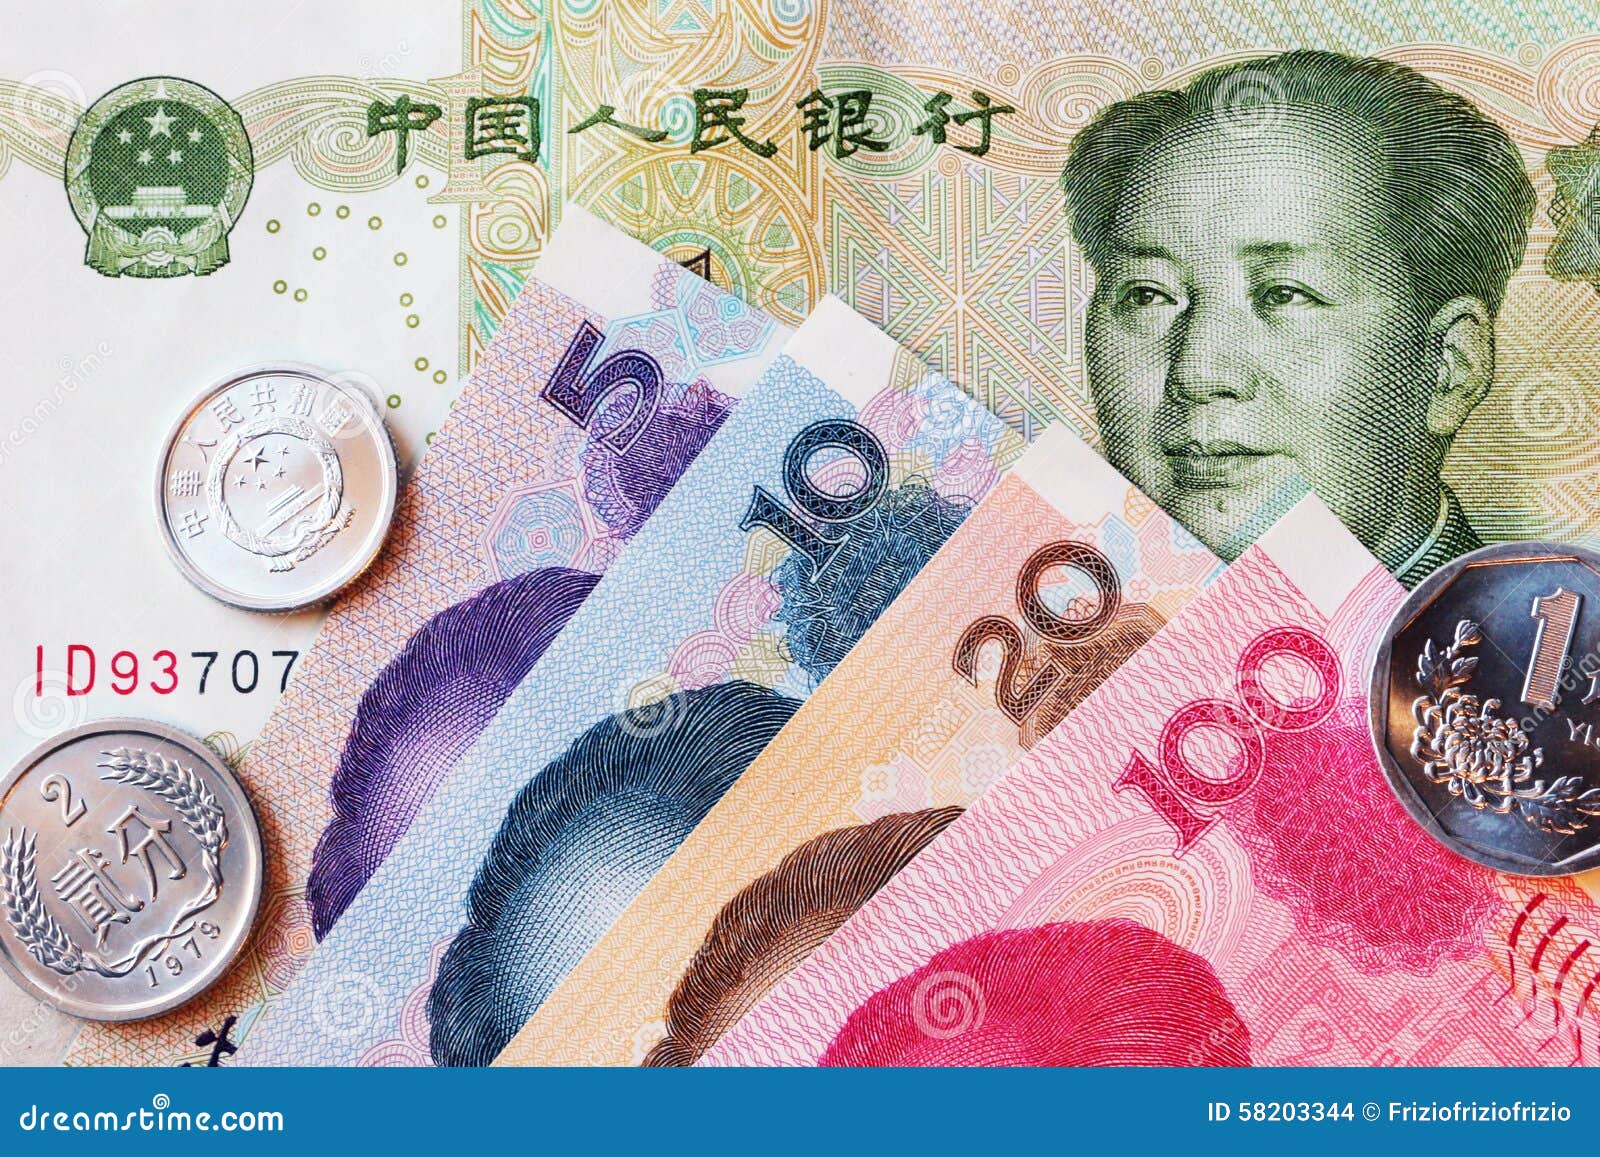 Июань. Денежная единица Китая юань. Валюта Китая банкноты. Китайский юань купюры. Юань жэньминьби.